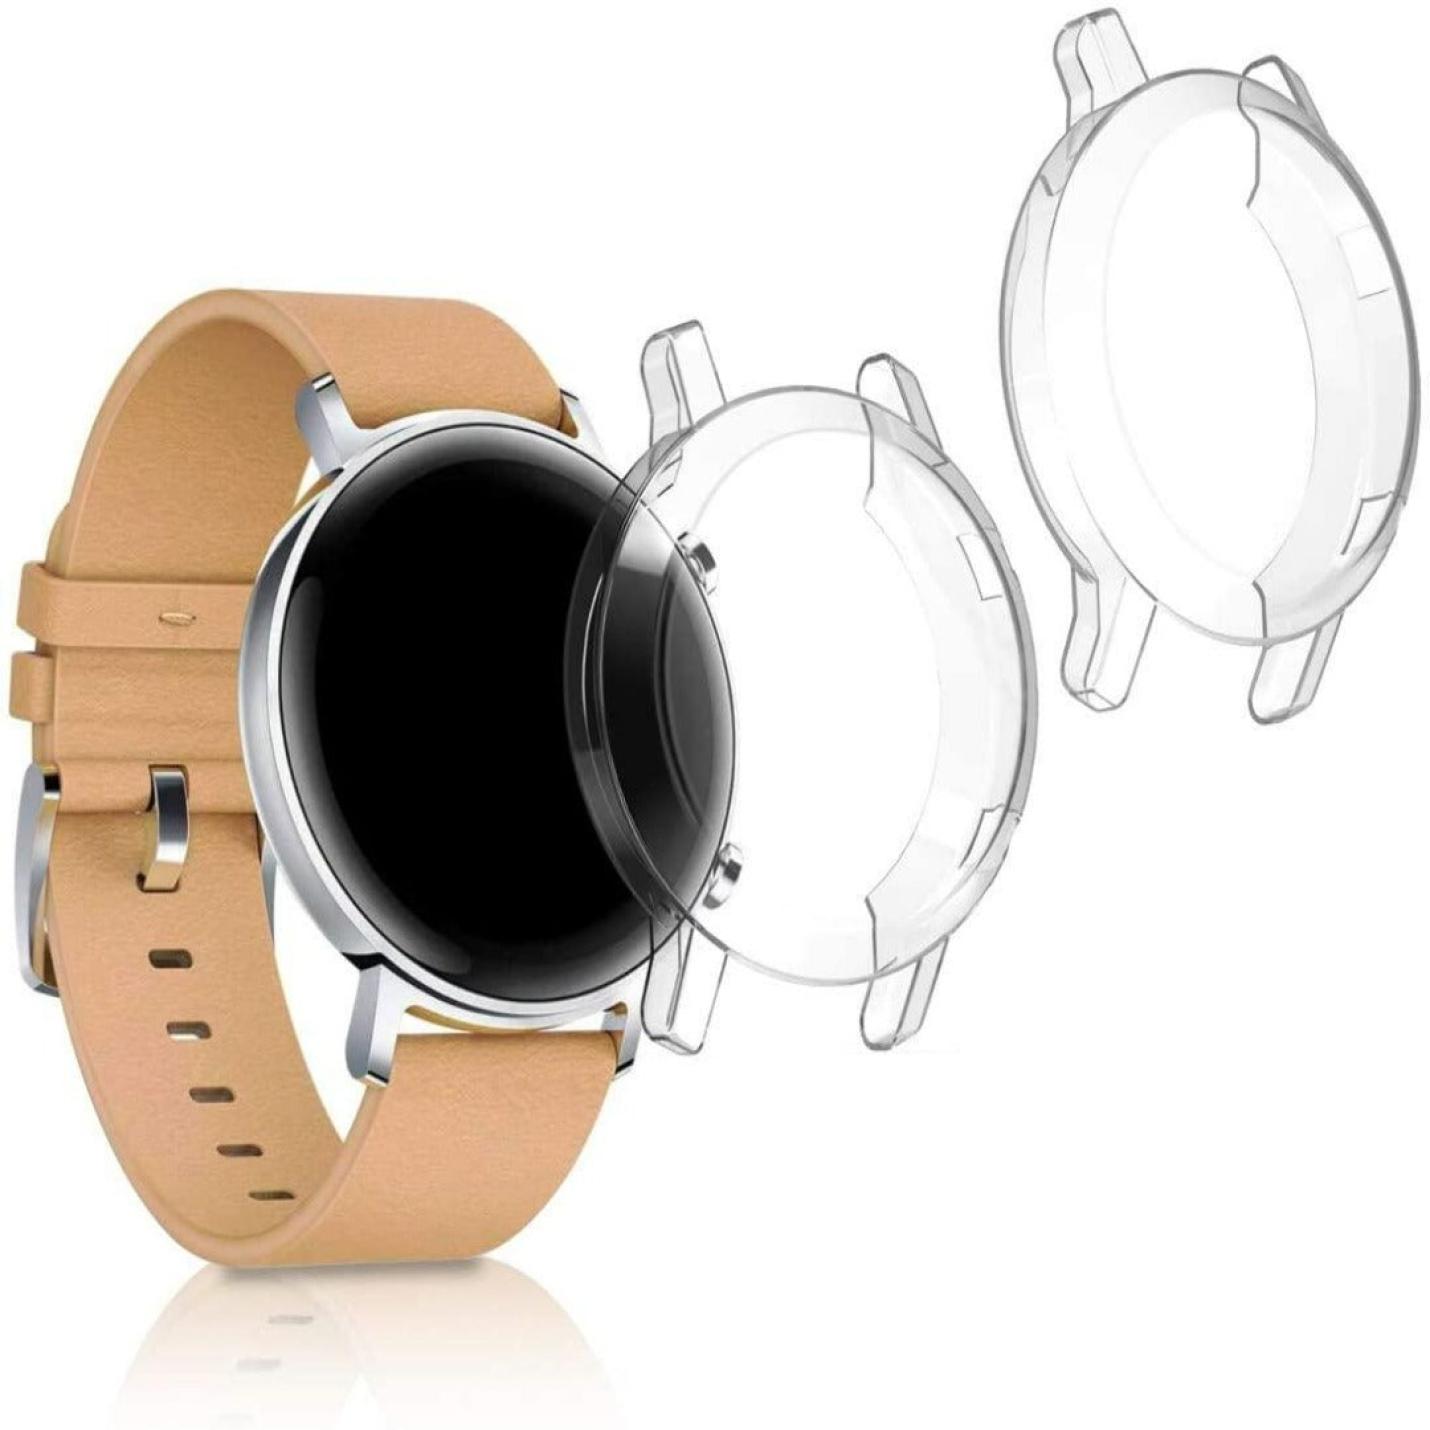 Set van 2 compatibele smartwatch covers voor Huawei Watch GT2 42mm